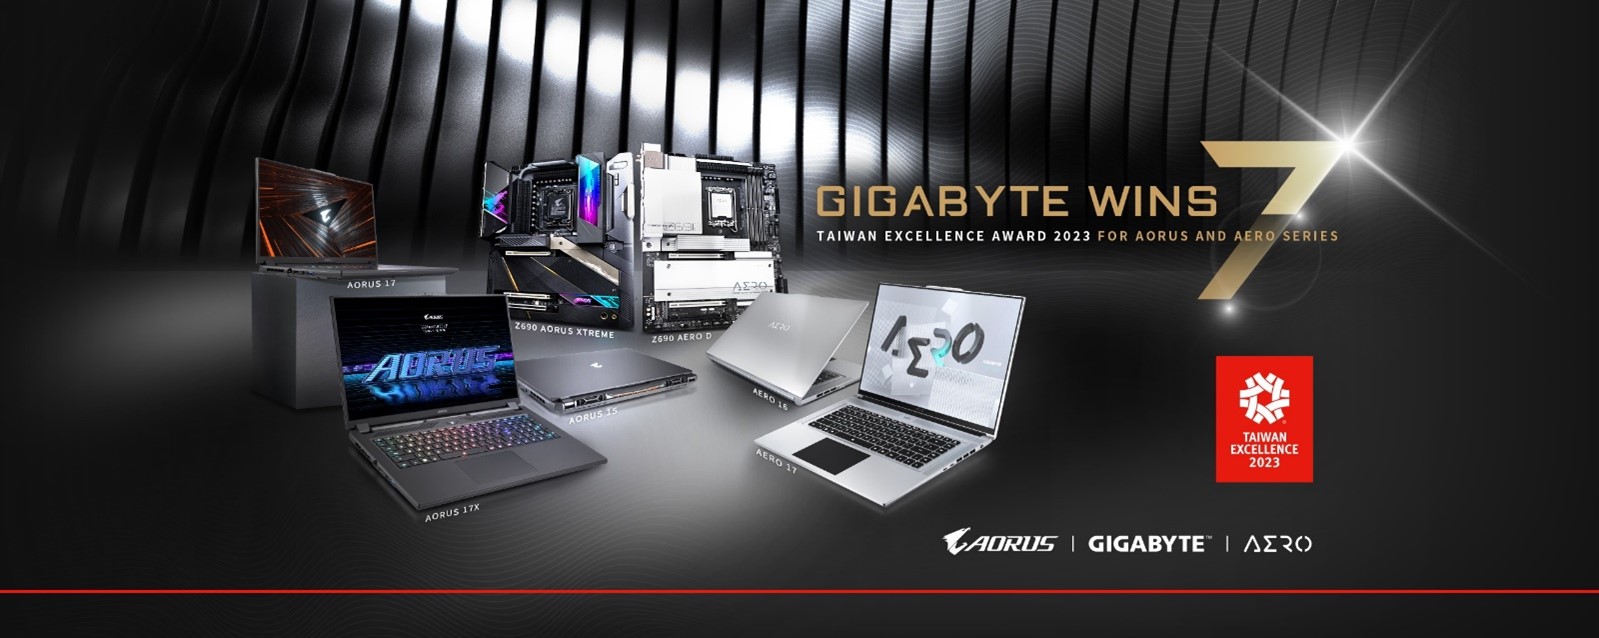 GIGABYTE Wins 7 Taiwan Excellence Award 2023 Once Again